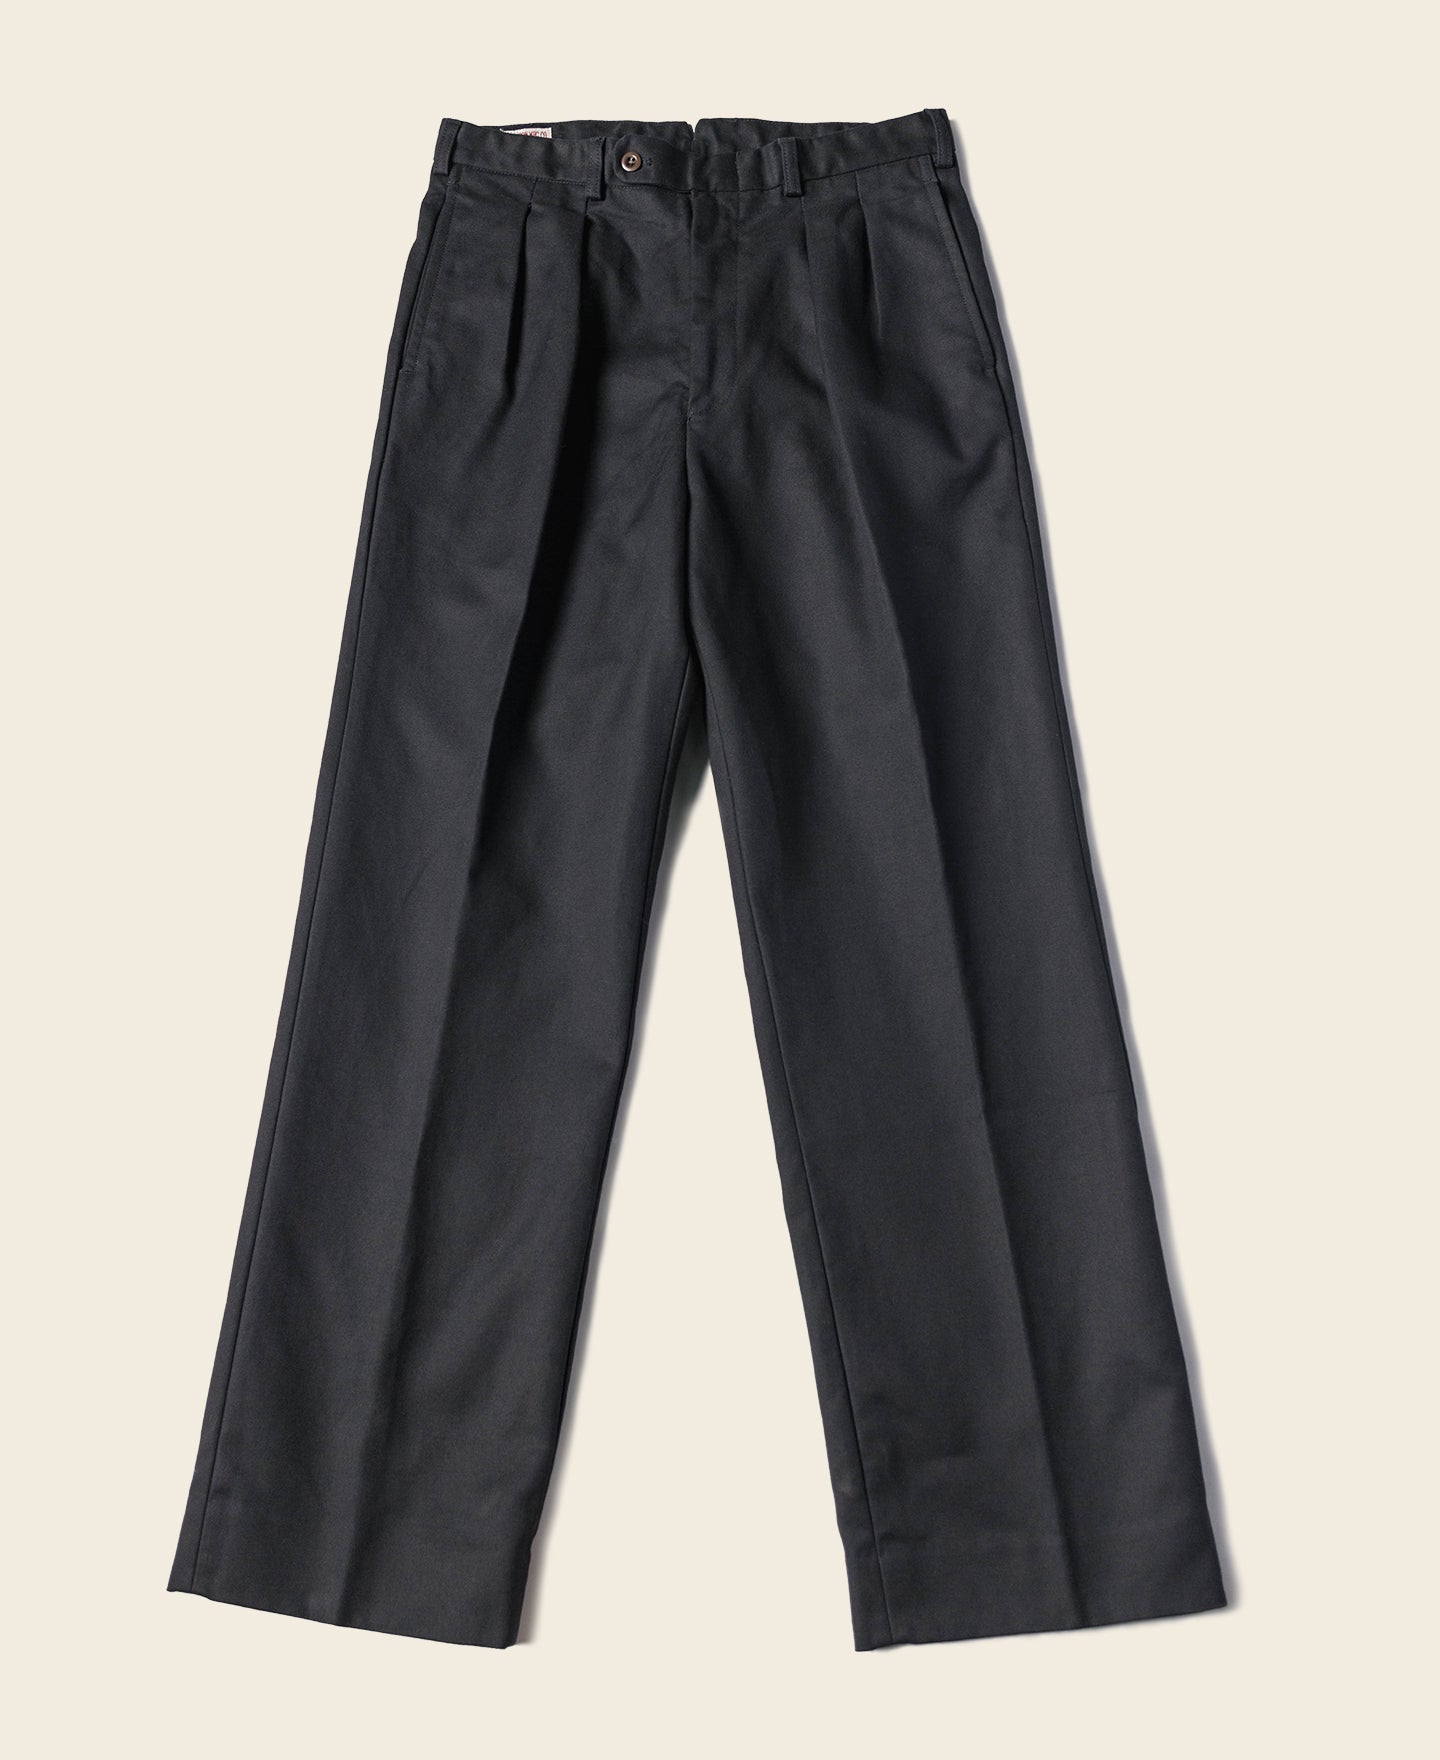 Lot 962 1960s 15 oz Cotton Black Double Pleated Pants